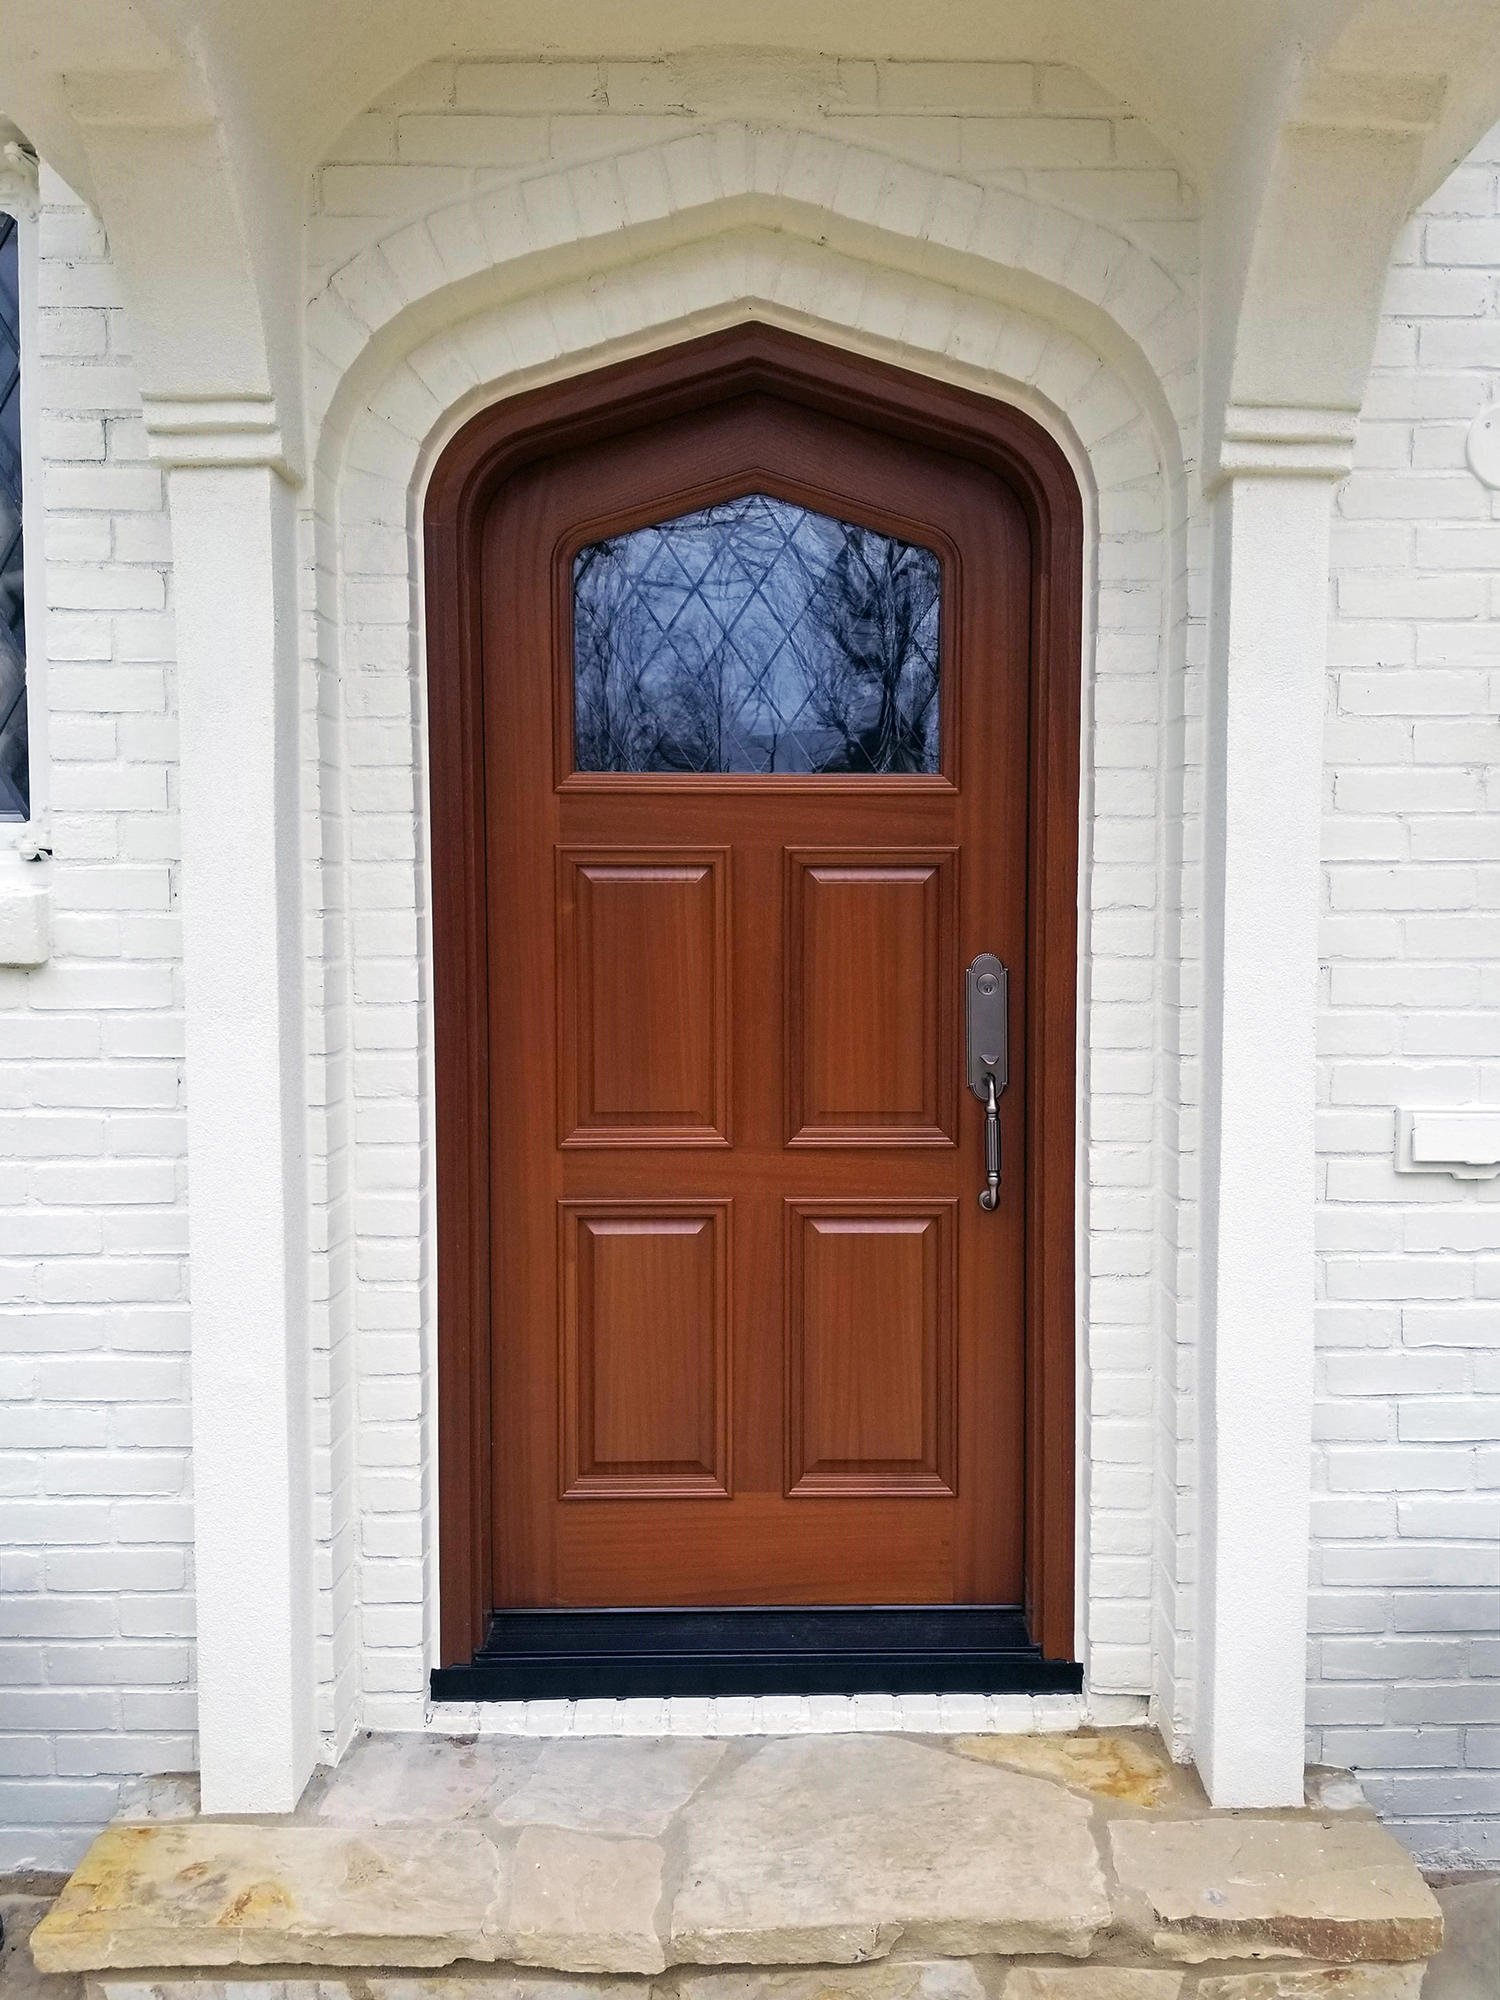 Architectural Window & Door Louisville, KY Windows and Doors Signature Door